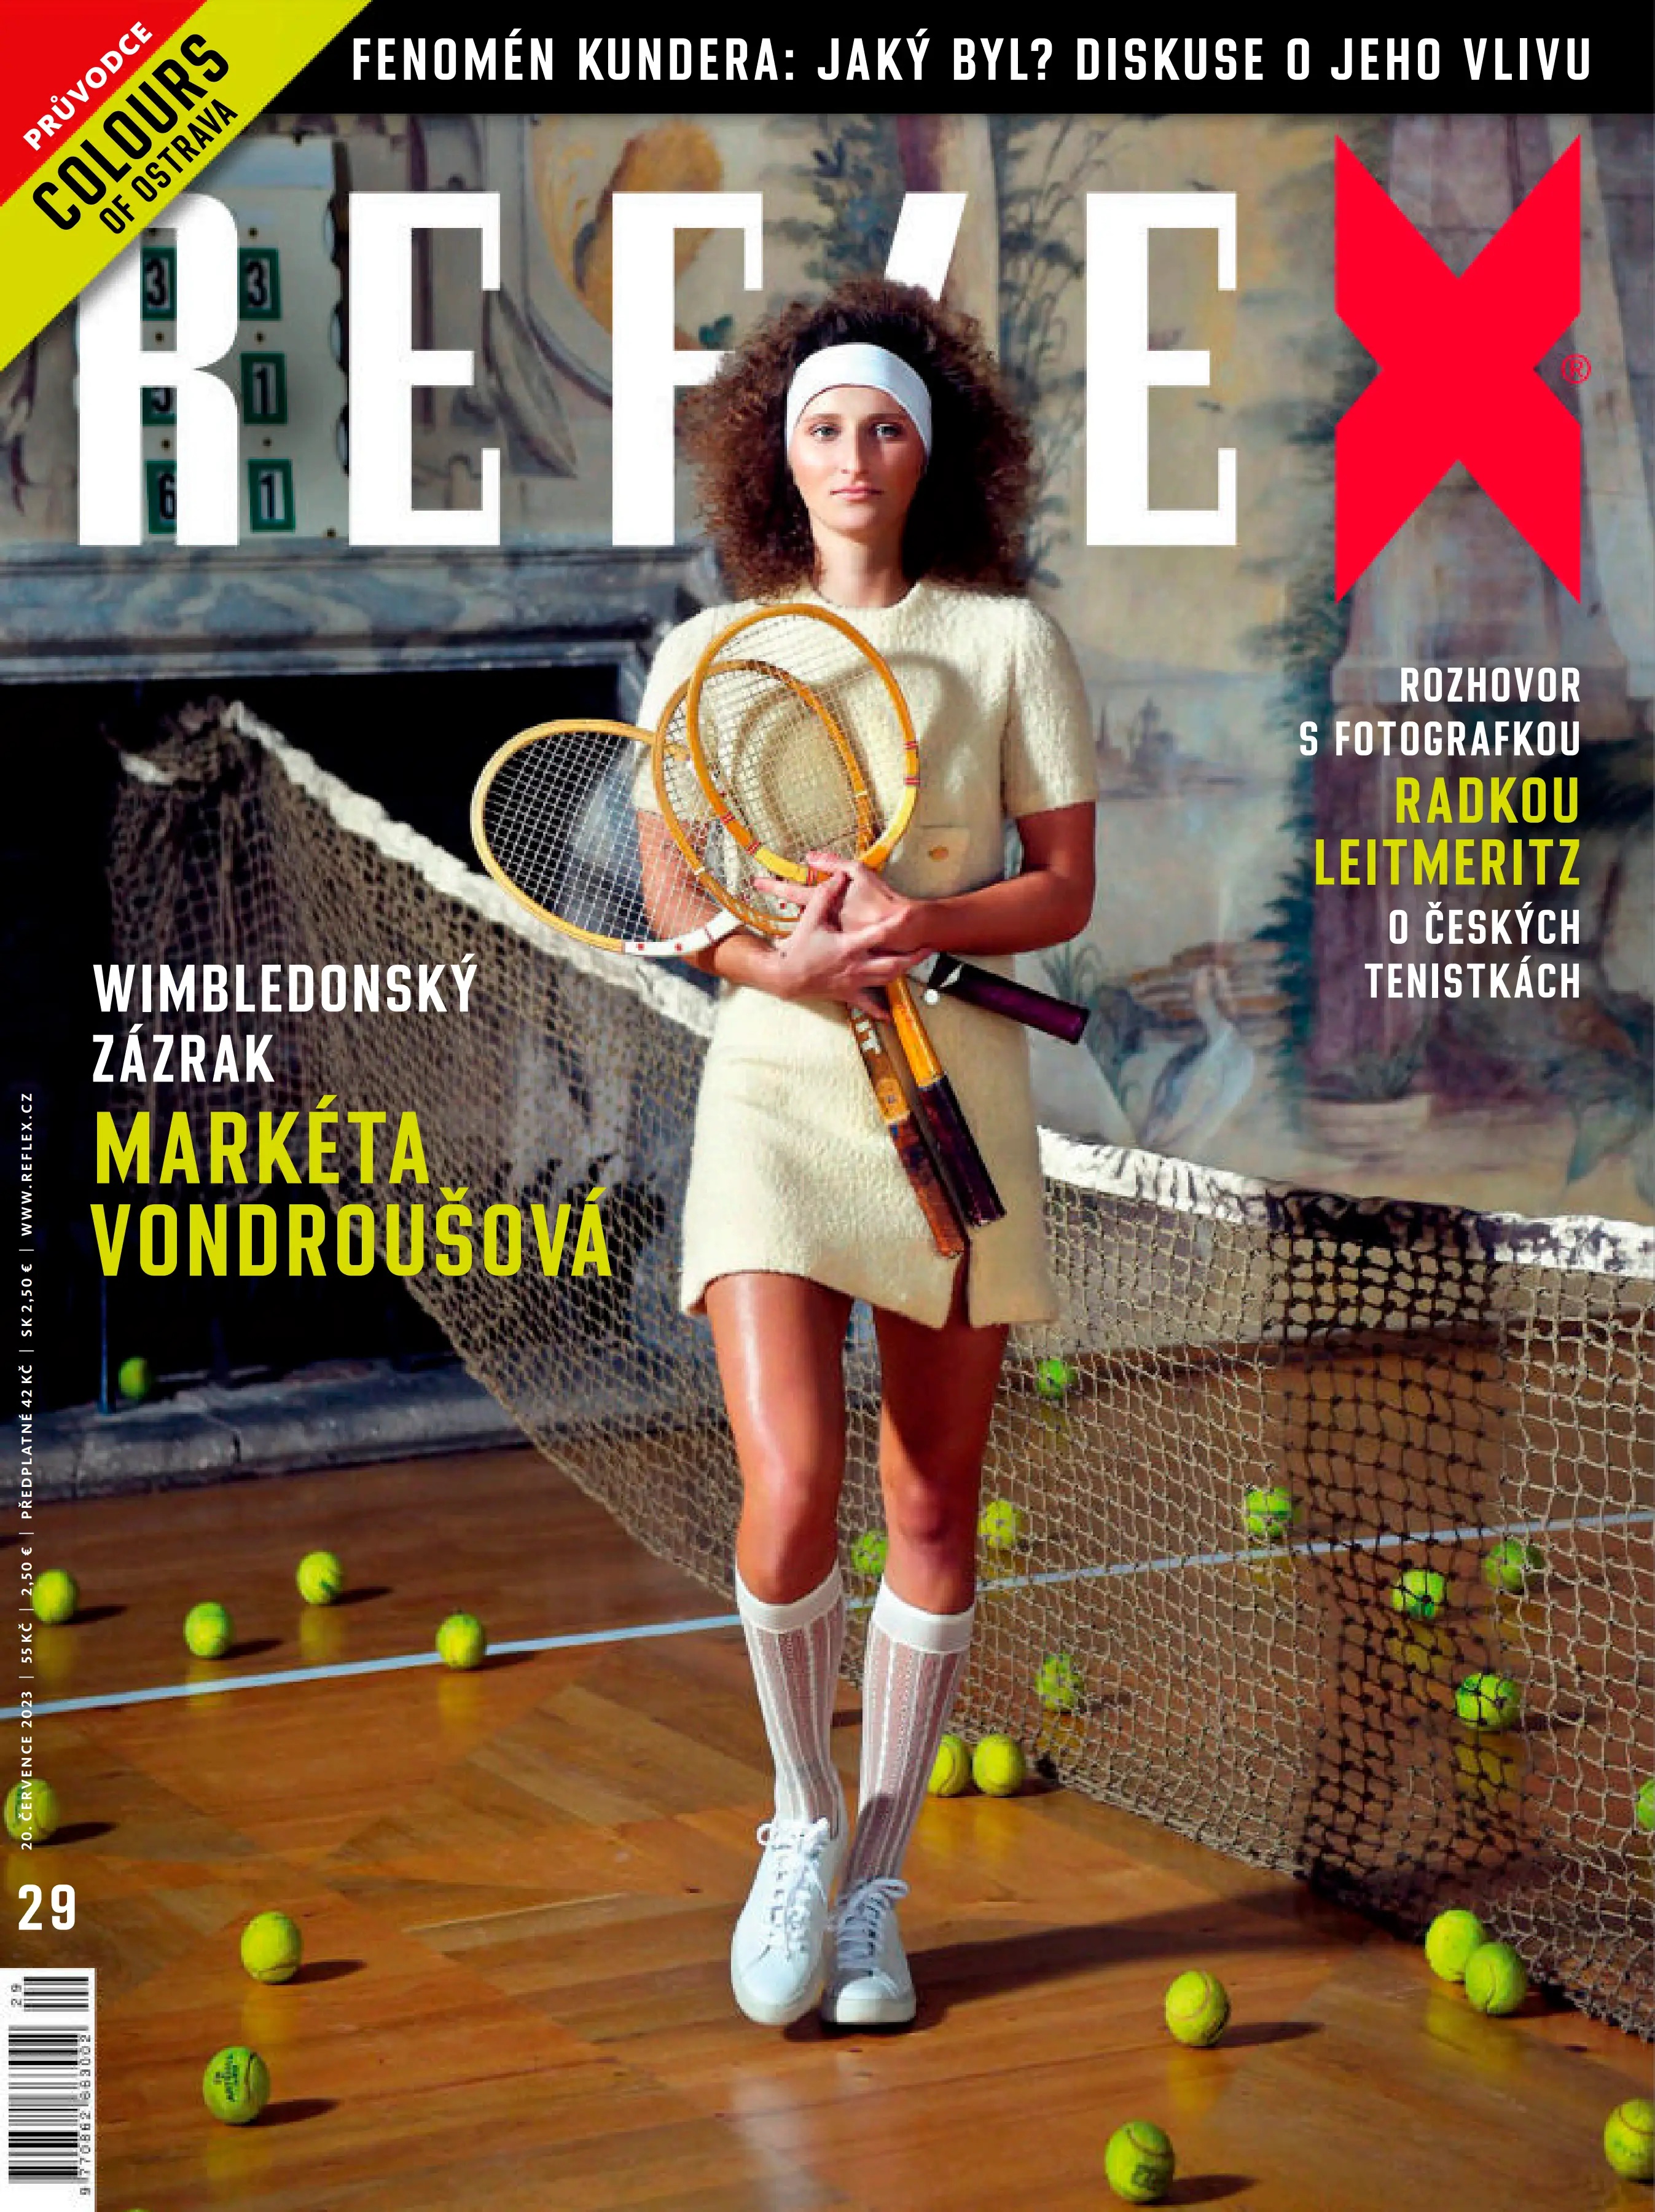 Kdy vychází časopis Reflex?